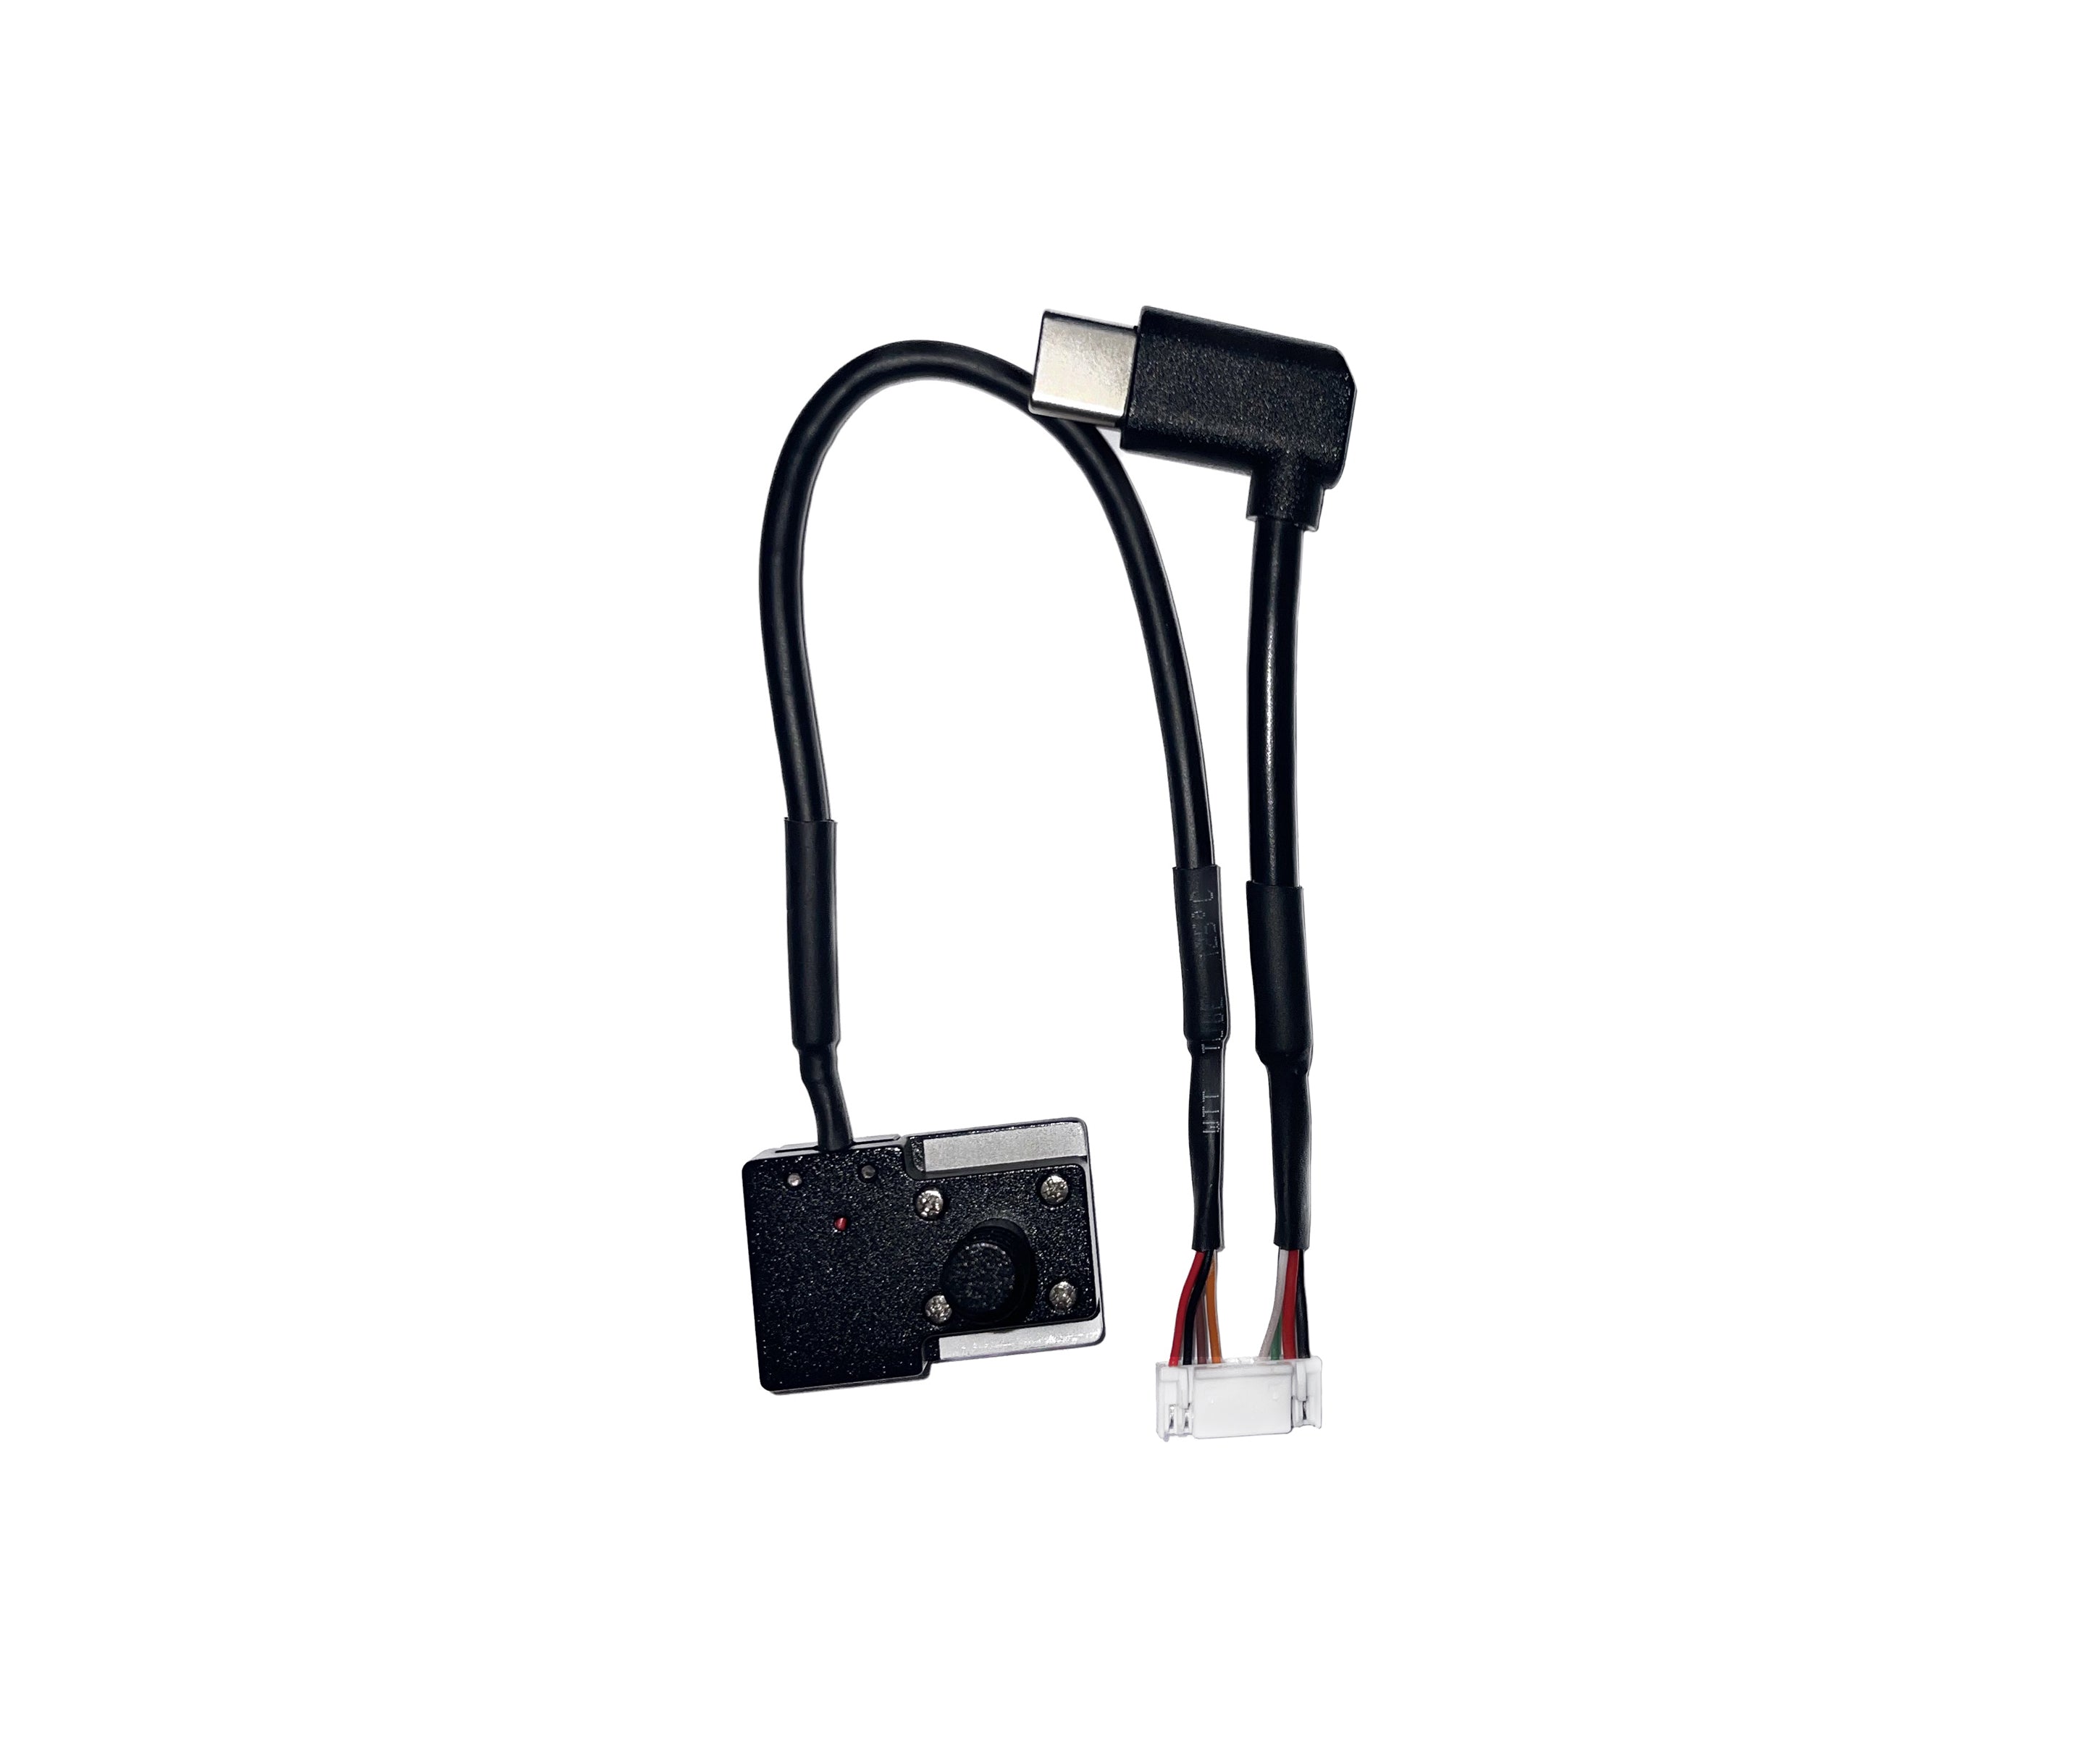 Gremsy PIXY SM - HOTSHOE & USB CAMERA CABLE